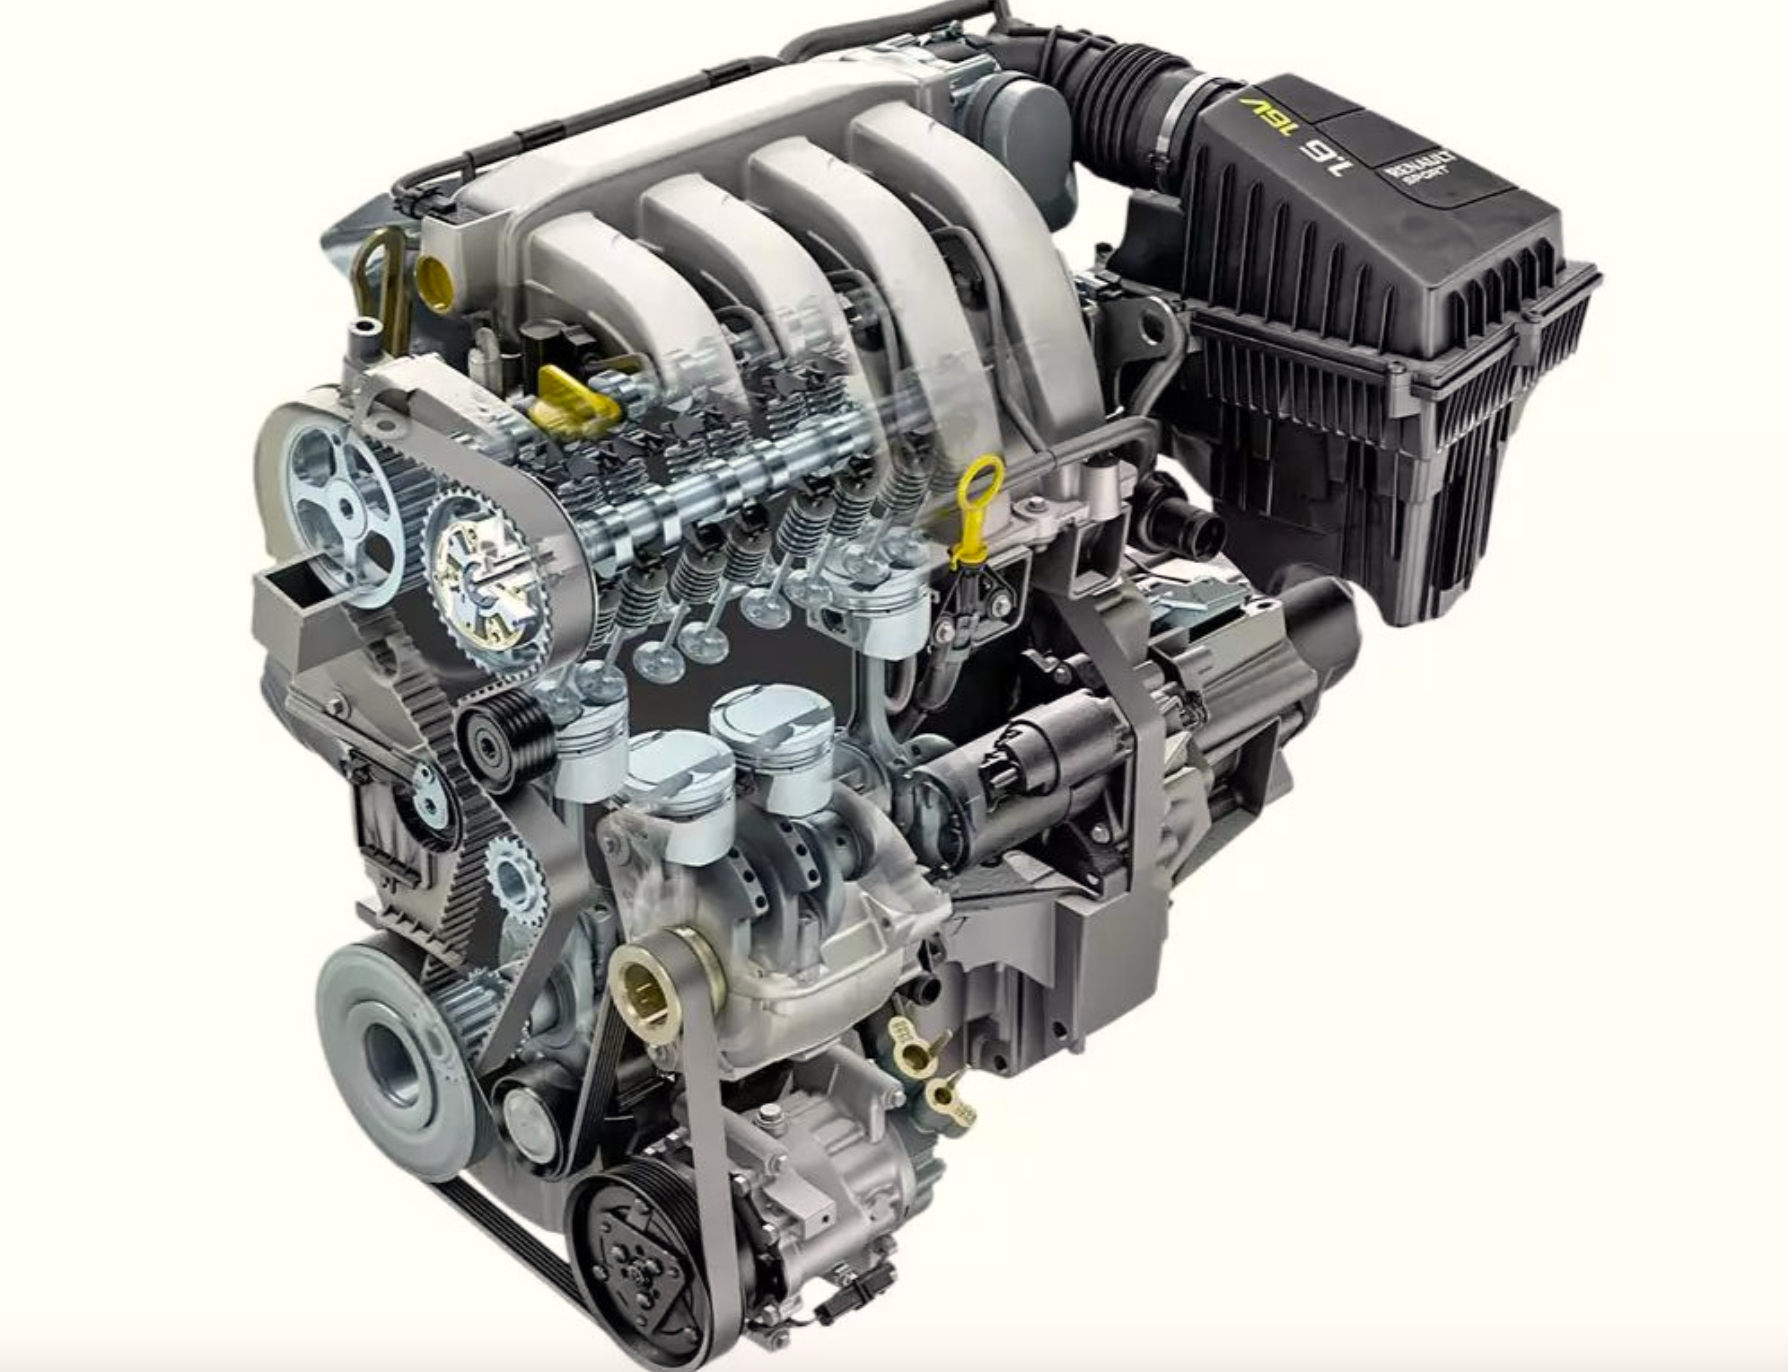 Ремонт двигателя 1.6 рено. Мотор к4м Рено 16 клапанов. Мотор Рено Логан 1.6 16. Двигатель Renault k4m 1.6 16v. Двигатель Renault 1.6 (k4m.